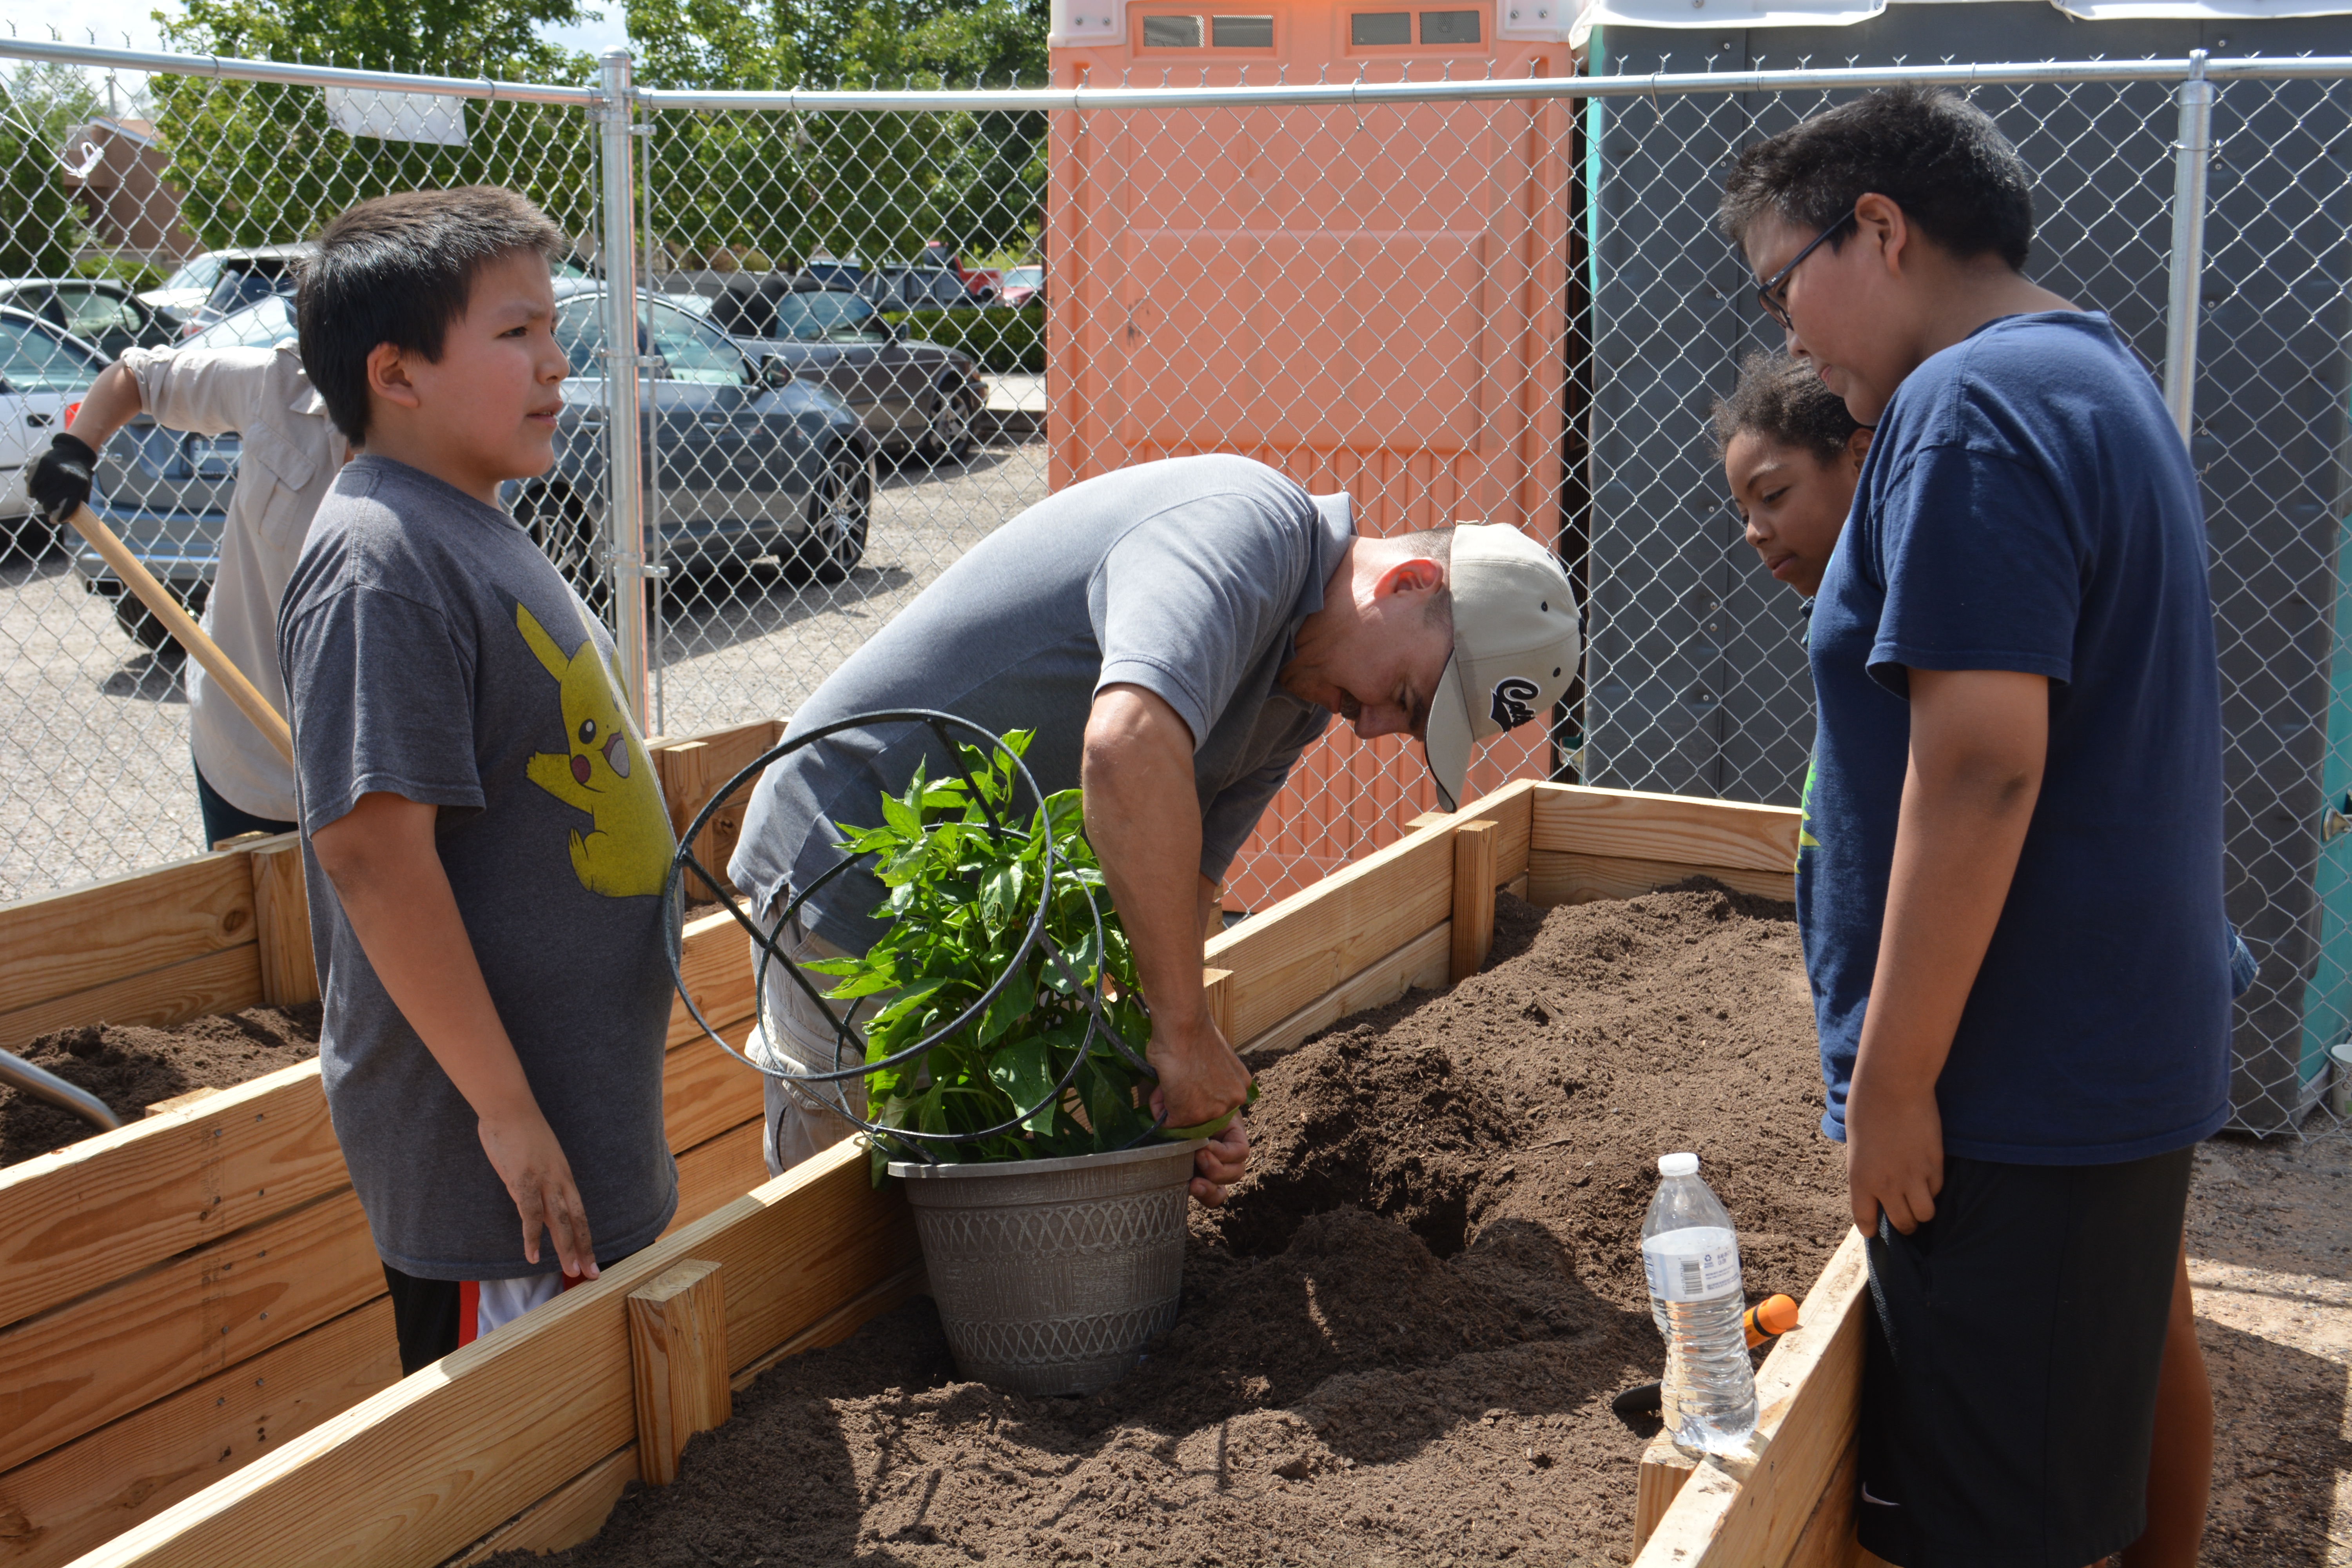 Des adolescents aident à planter une plante.